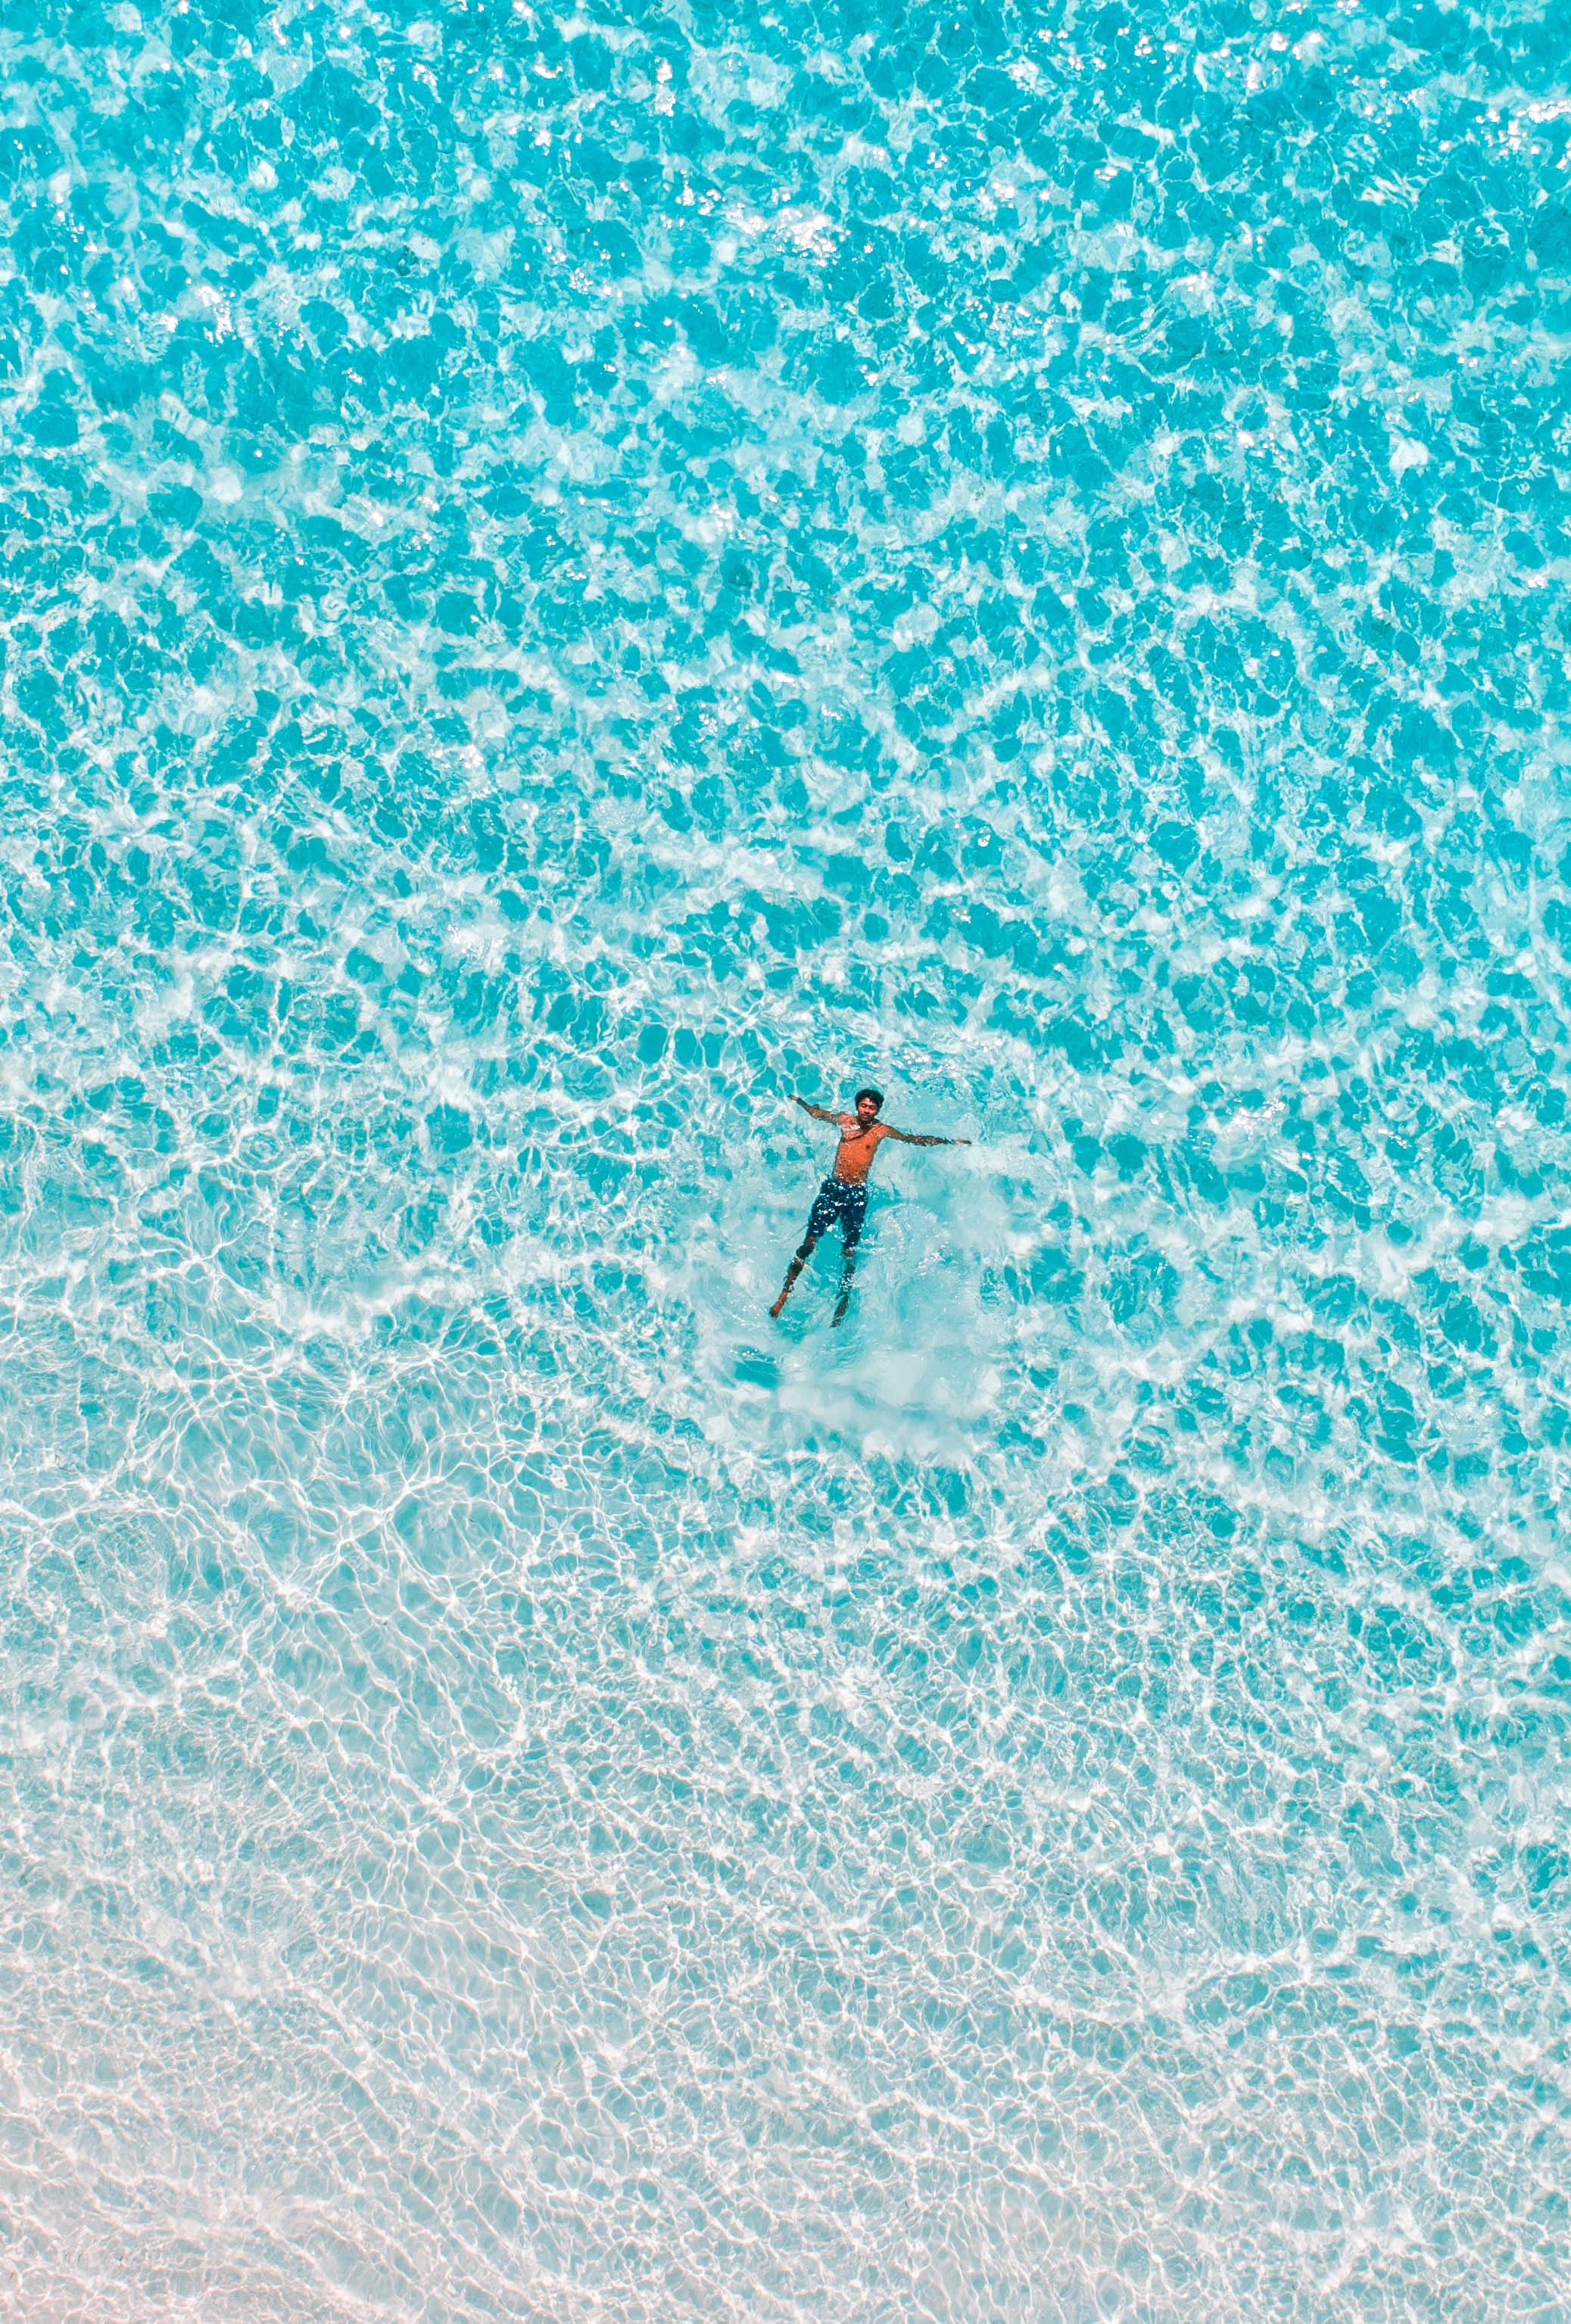 Una pequeña figura de una persona completamente vestida flotando en un océano tranquilo.